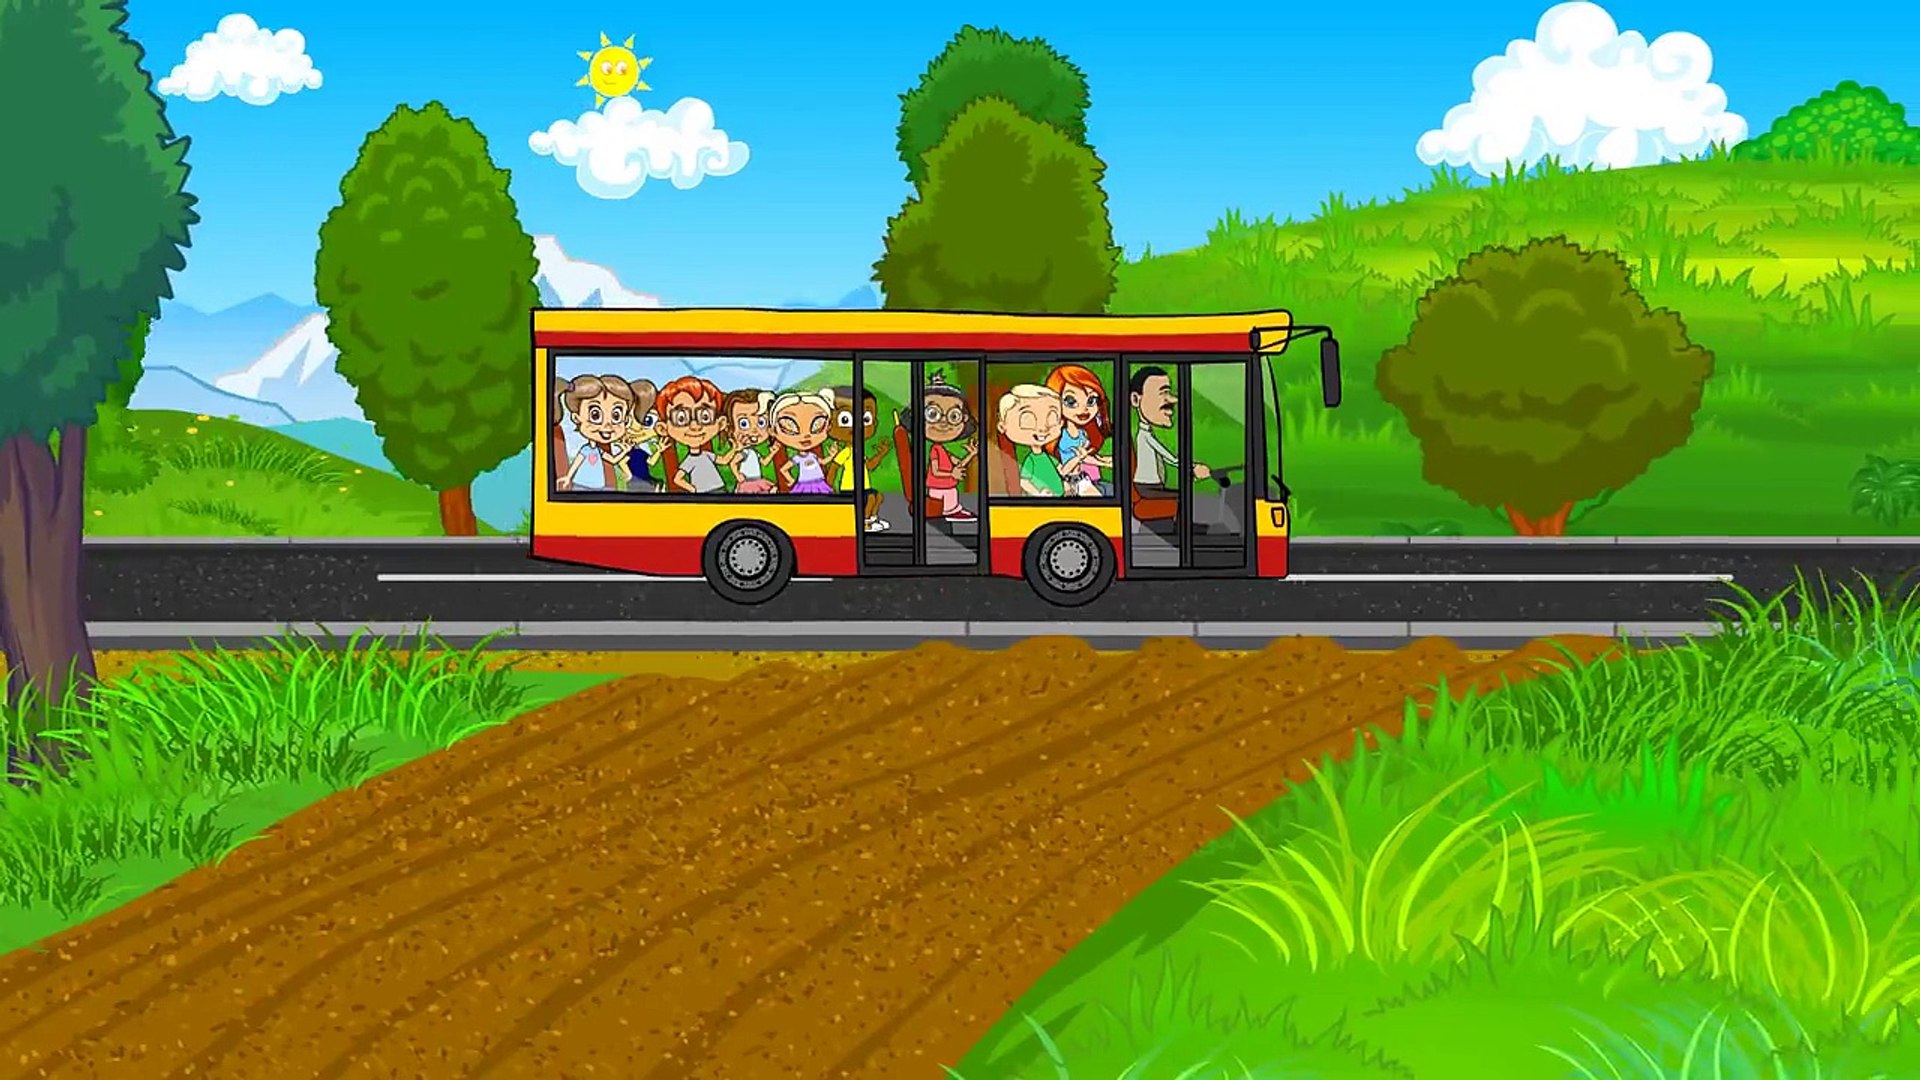 Koła Autobusu Kręcą się - BajuBaju.tv - dla Dzieci po Polsku - video  Dailymotion